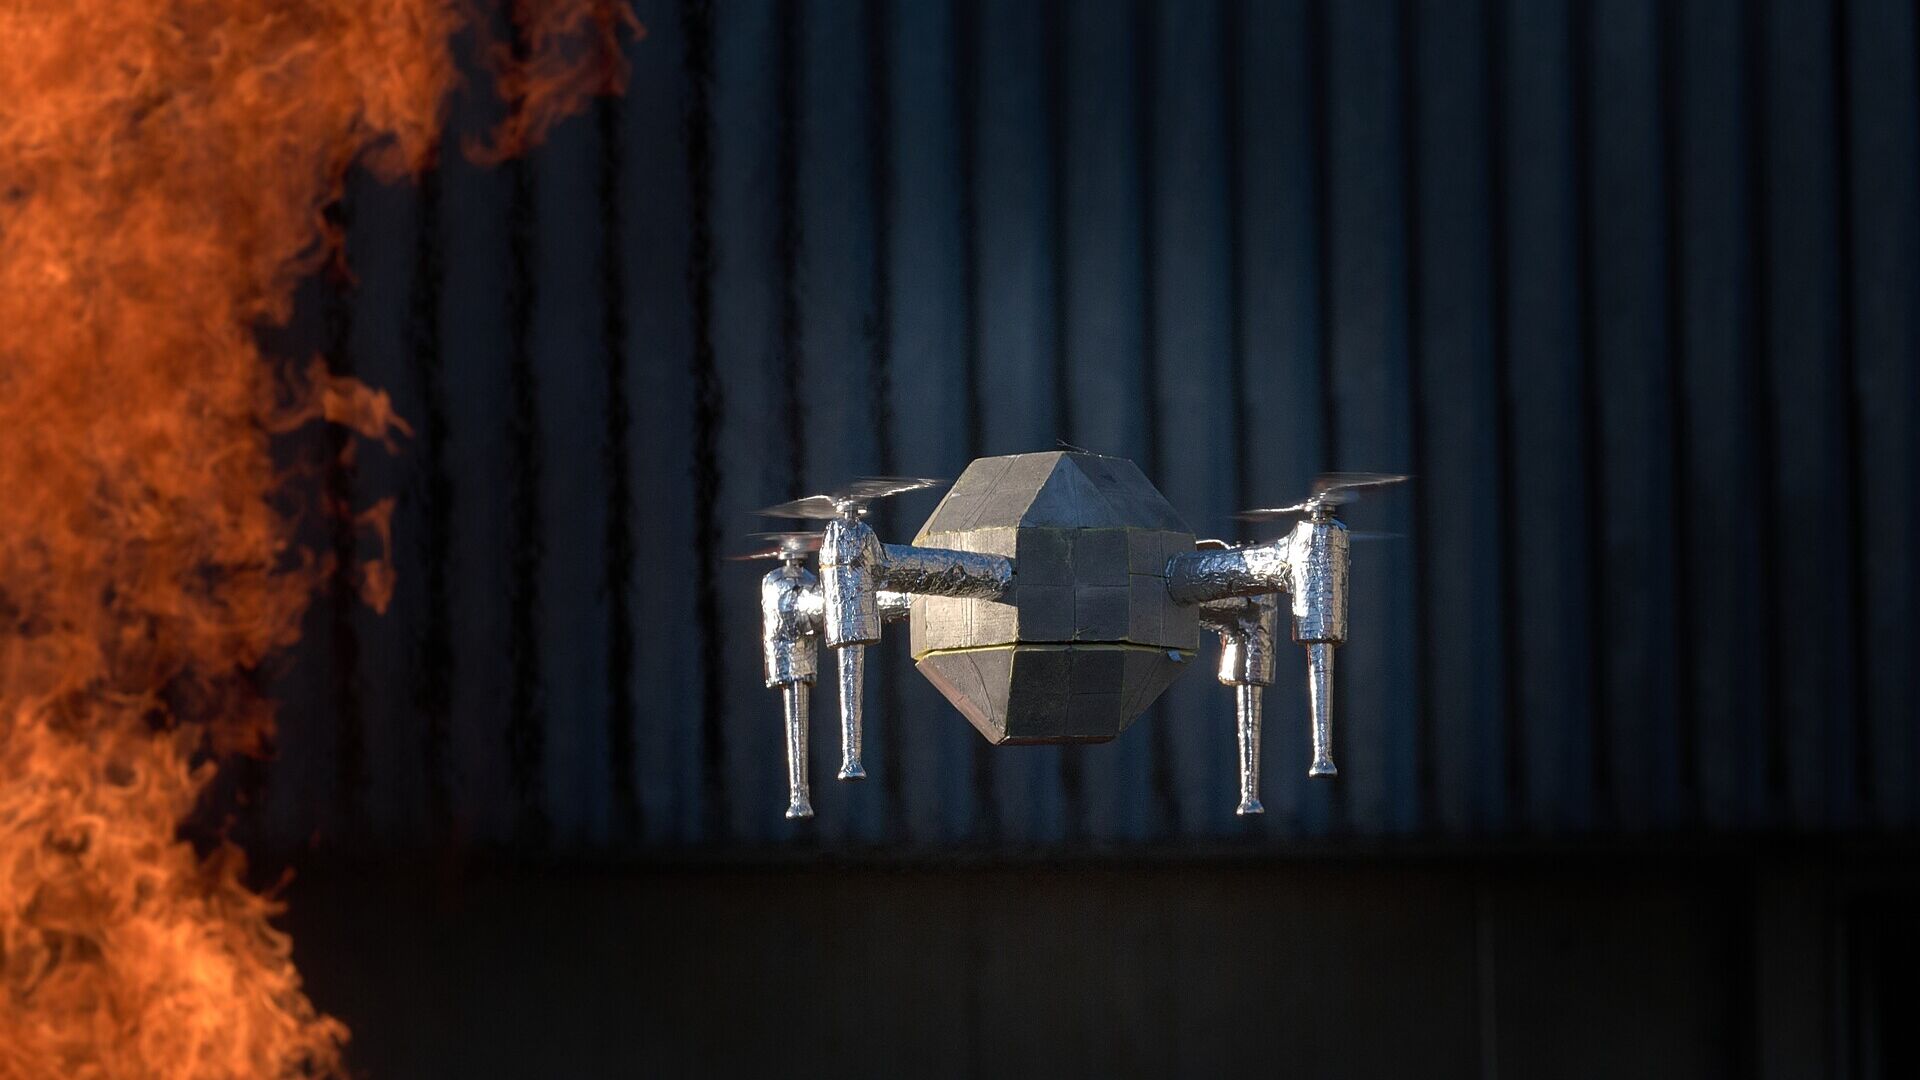 Drone: i test antincendio di Andelfingen